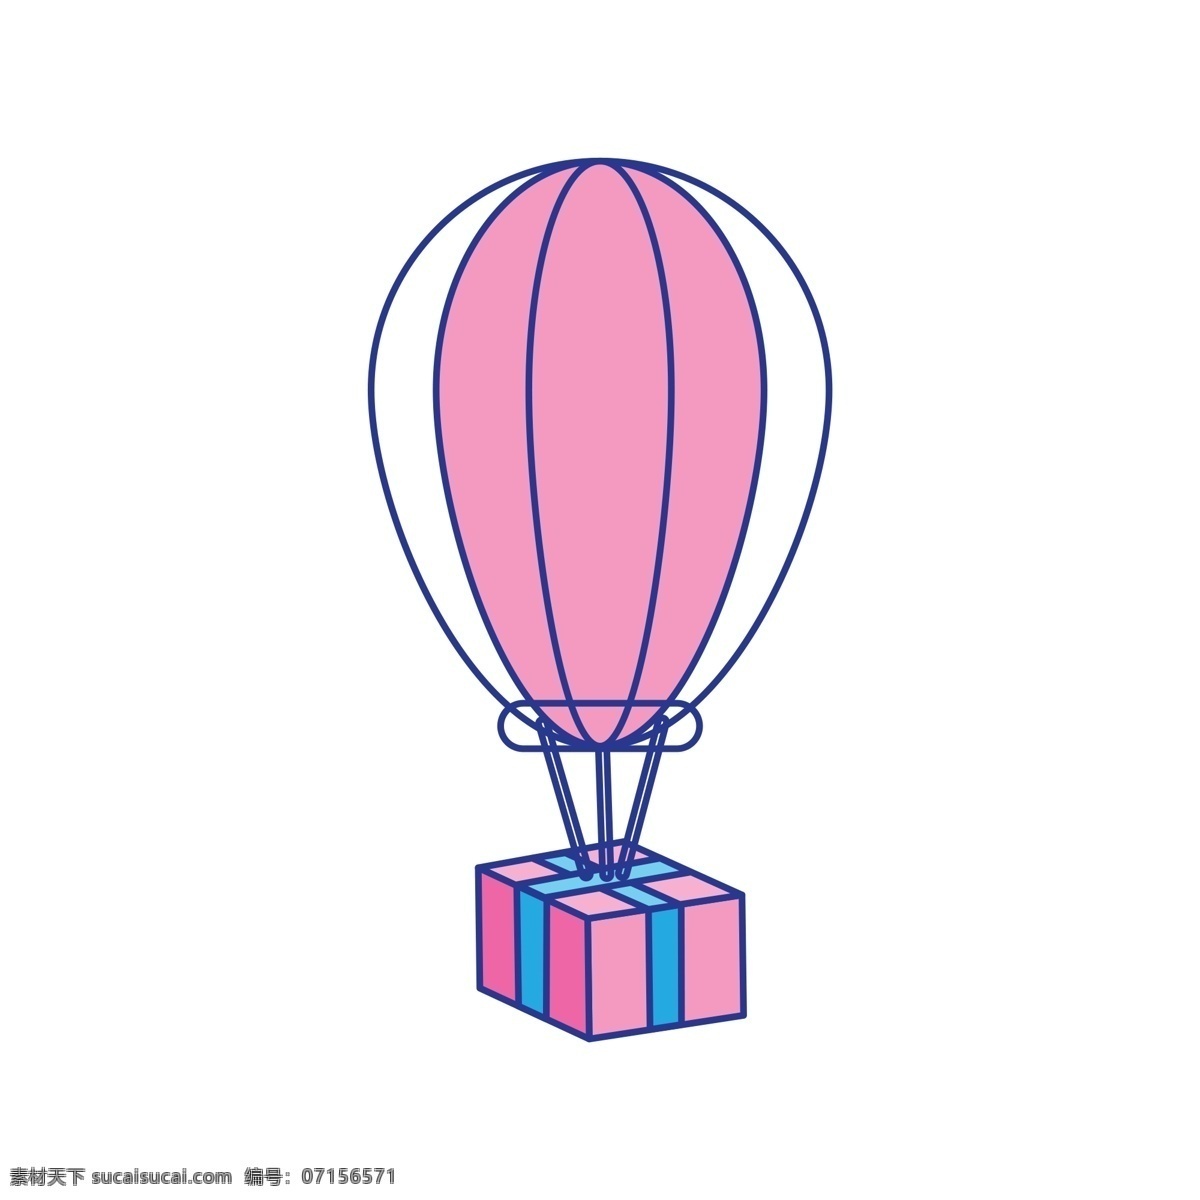 节日 喜庆 热气球 卡通 透明 插画元素 免扣素材 简约风 节日元素